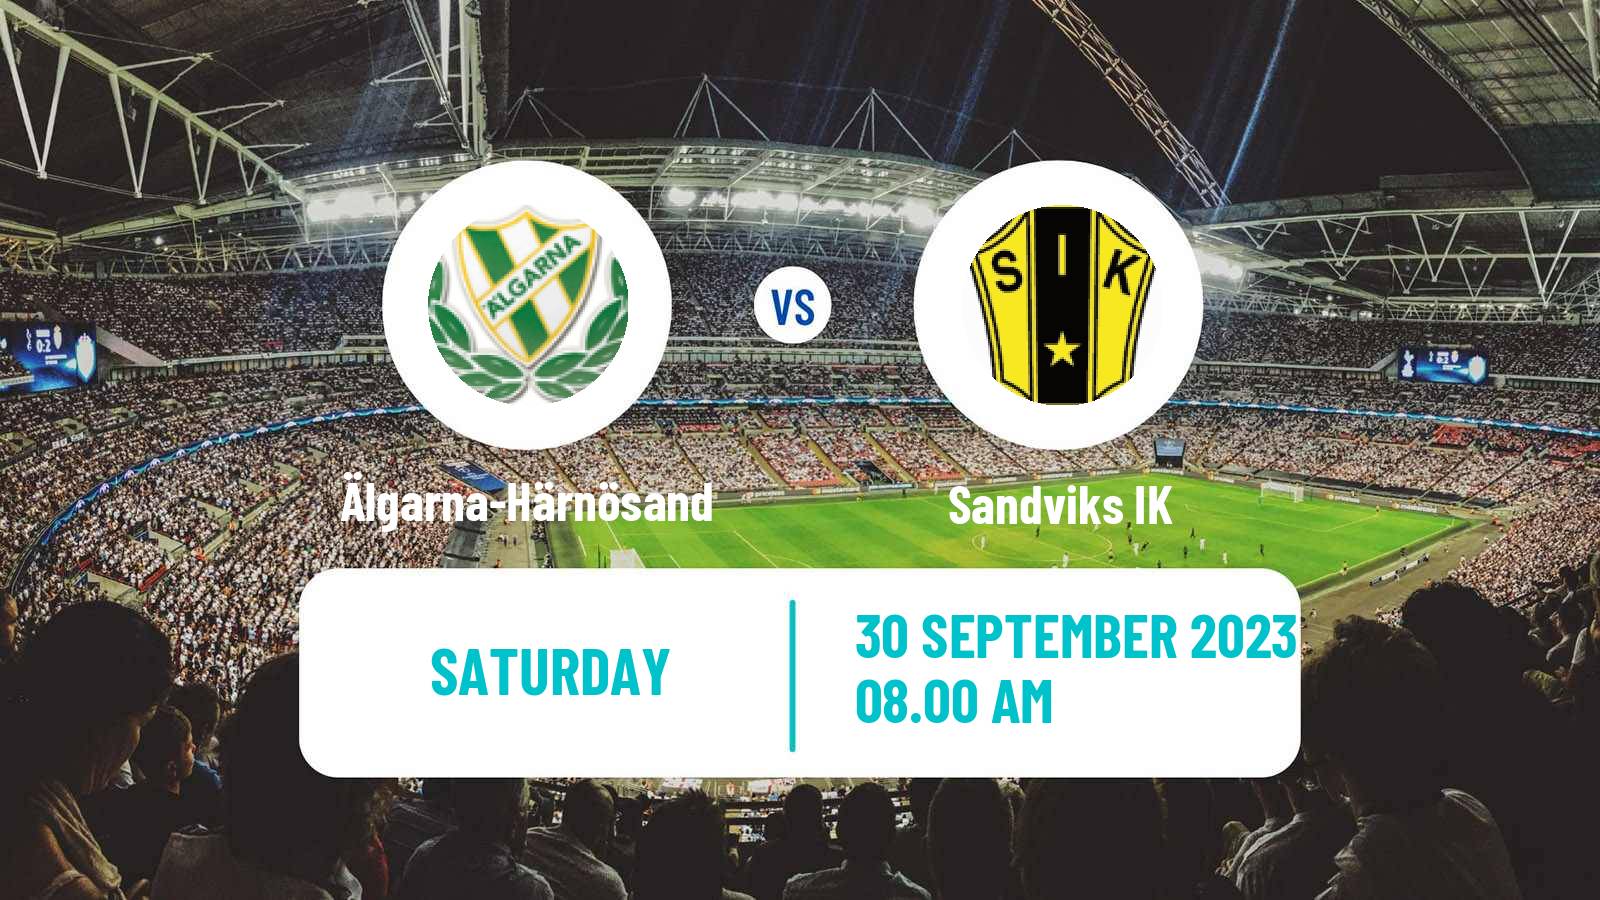 Soccer Swedish Division 2 - Norrland Älgarna-Härnösand - Sandvik